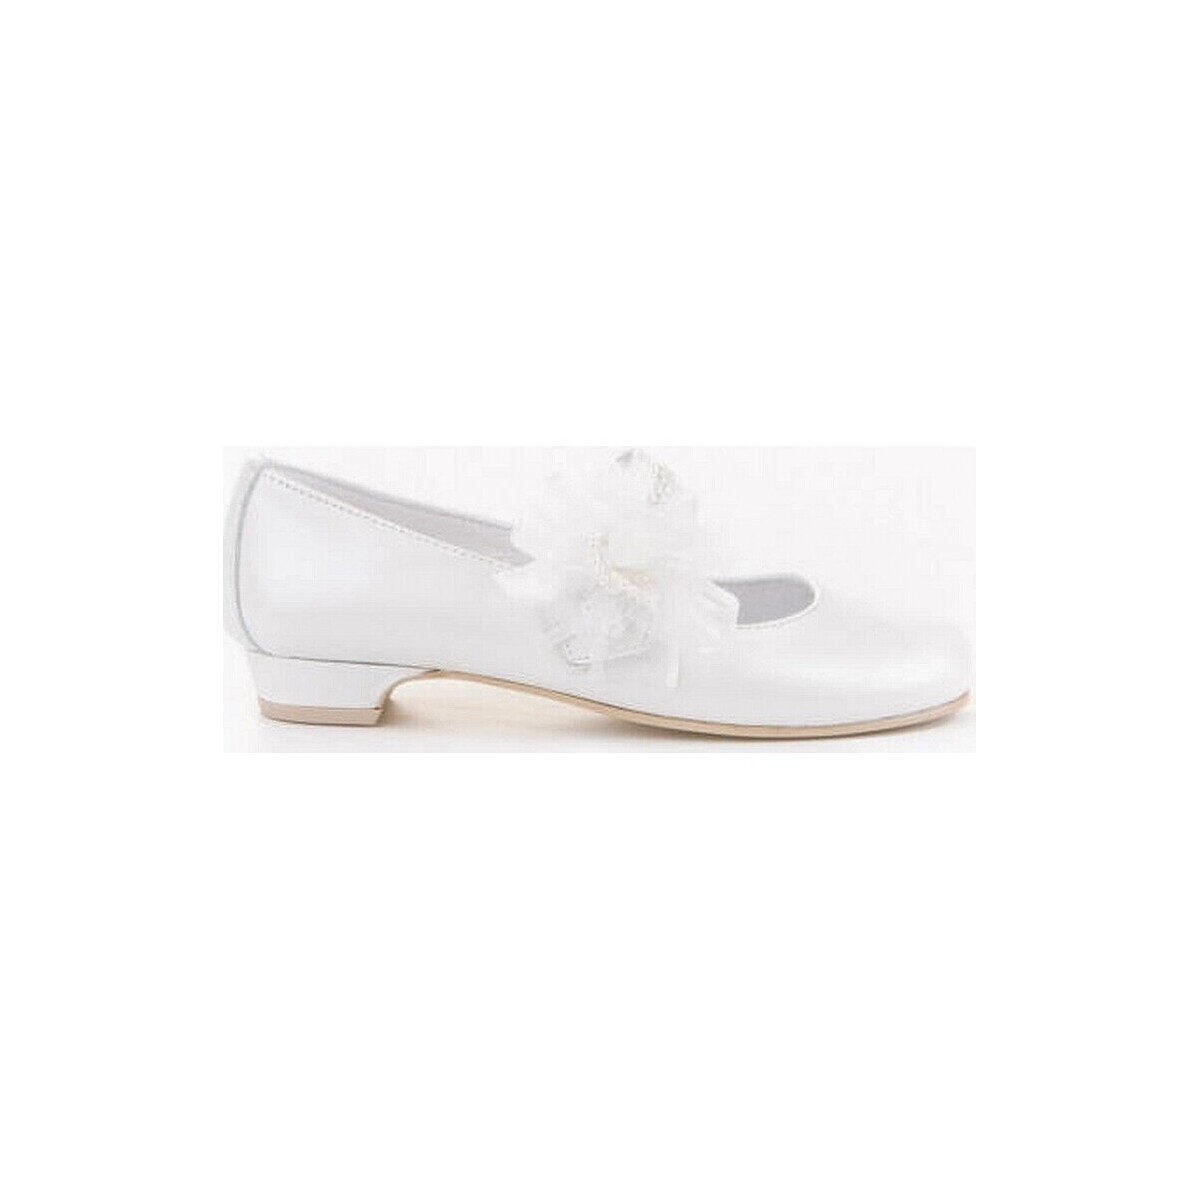 Sapatos Rapariga Sabrinas Angelitos 20868-24 Branco